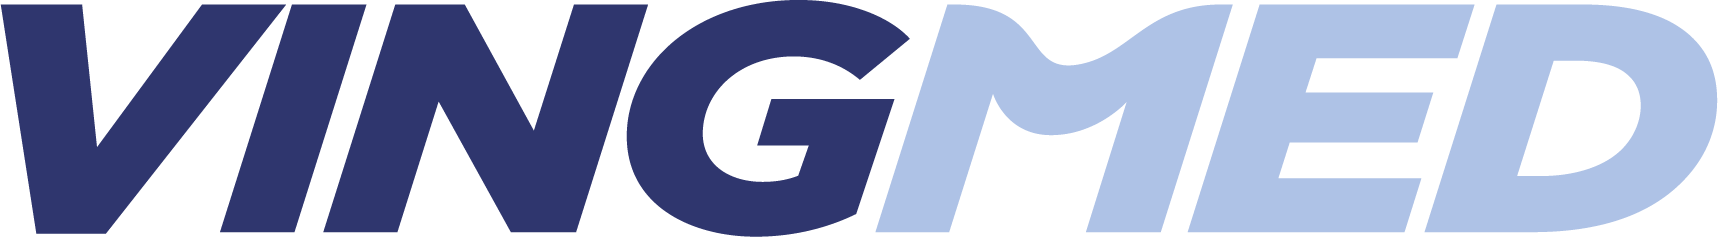 Vingmed_Logo_2021_CMYK